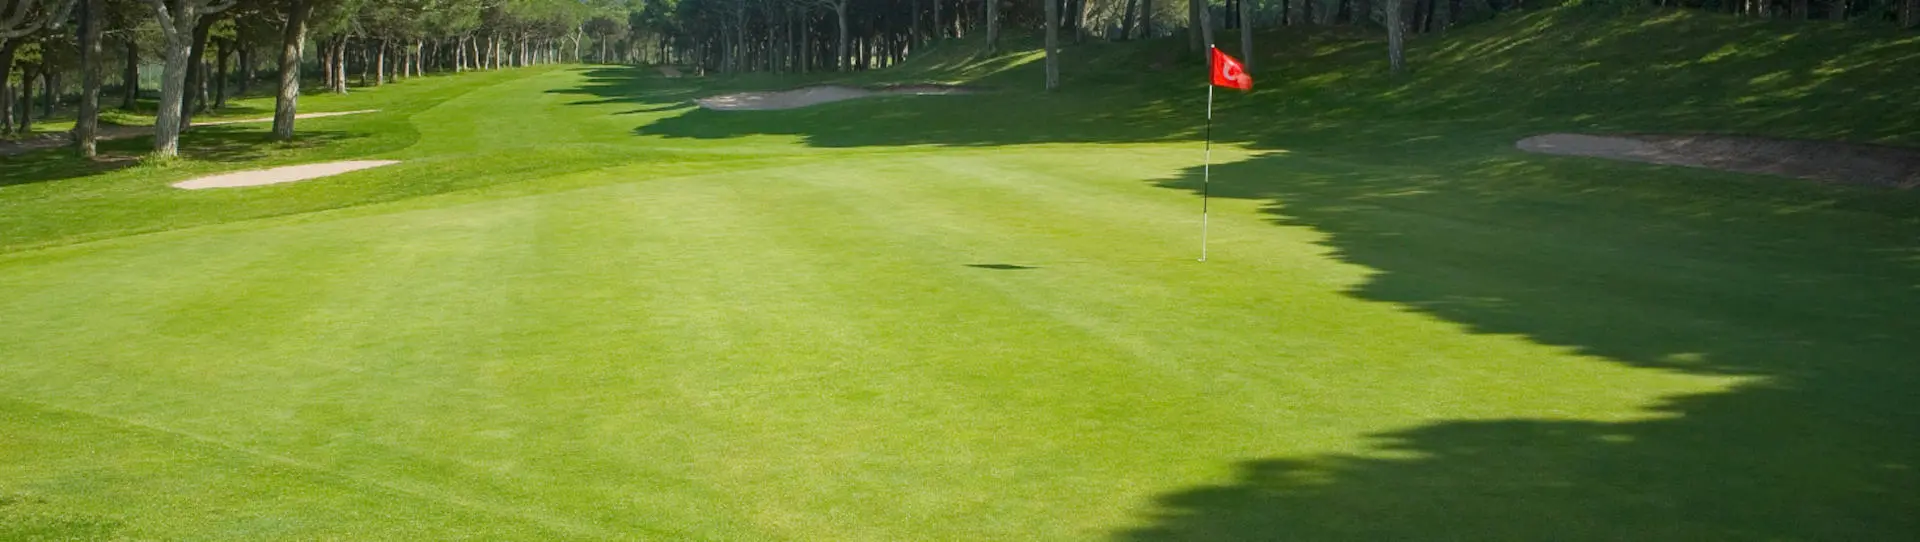 Spain golf courses - Golf de Pals - Photo 2